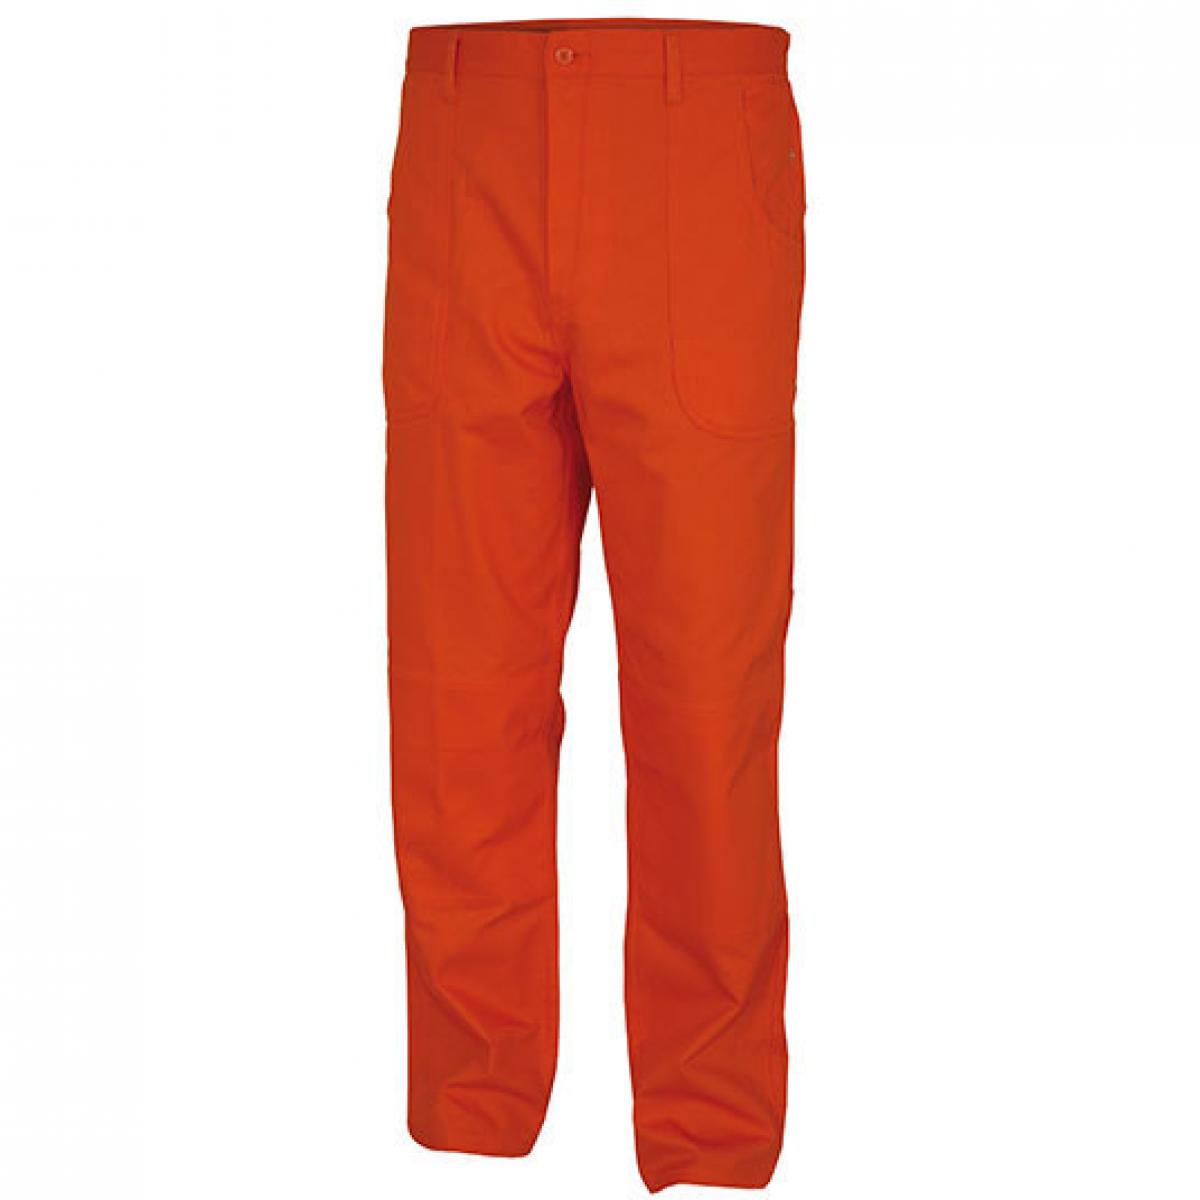 Hersteller: Carson Classic Workwear Herstellernummer: KTH709H Artikelbezeichnung: Herren Classic Work Pants Arbeitshose / Bei 60 Grad waschbar Farbe: Orange